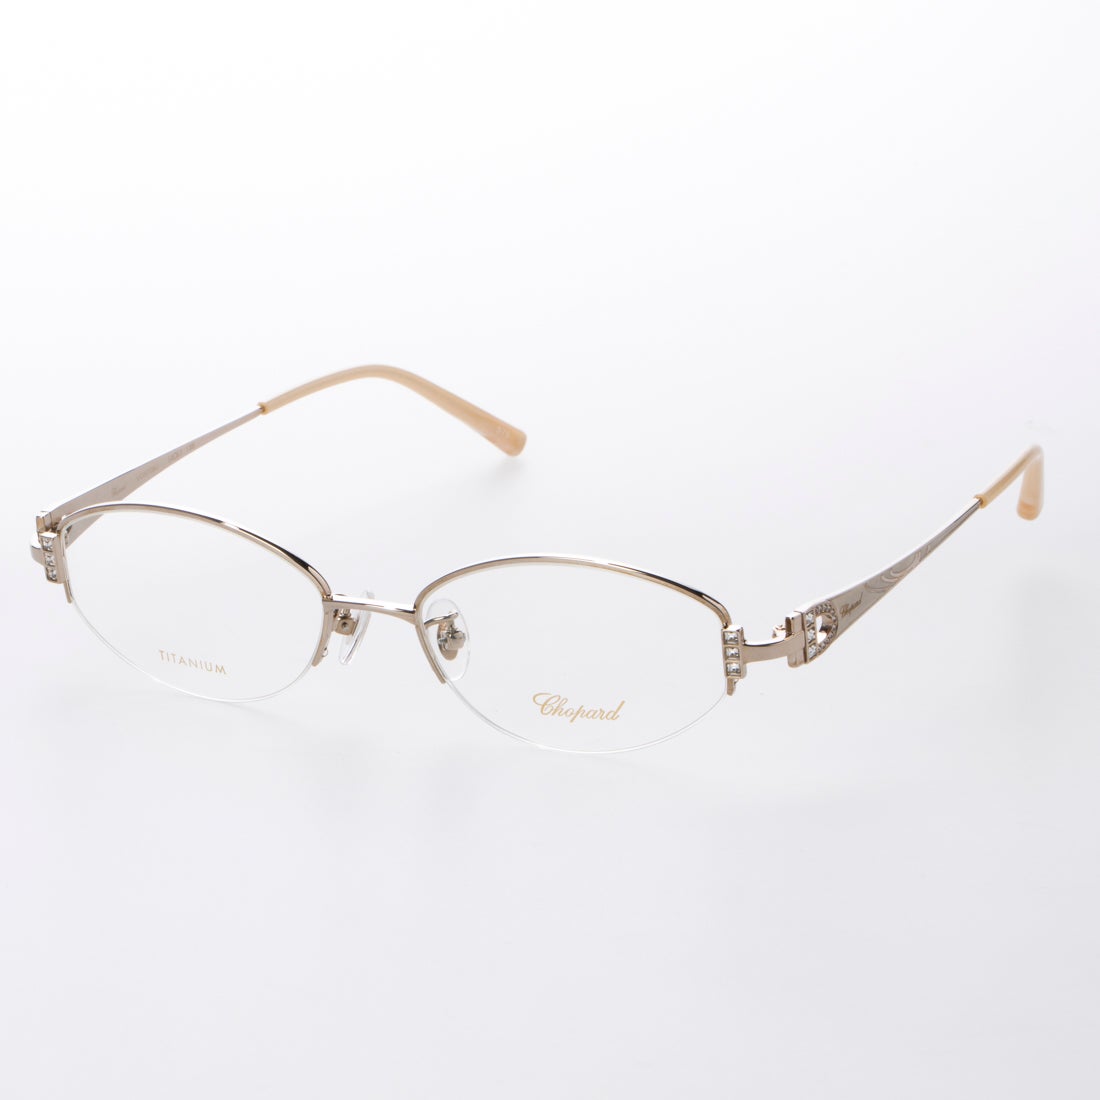 ショパール Chopard メガネ 眼鏡 アイウェア レディース メンズ ホワイトゴールド アウトレット通販 ロコレット Locolet